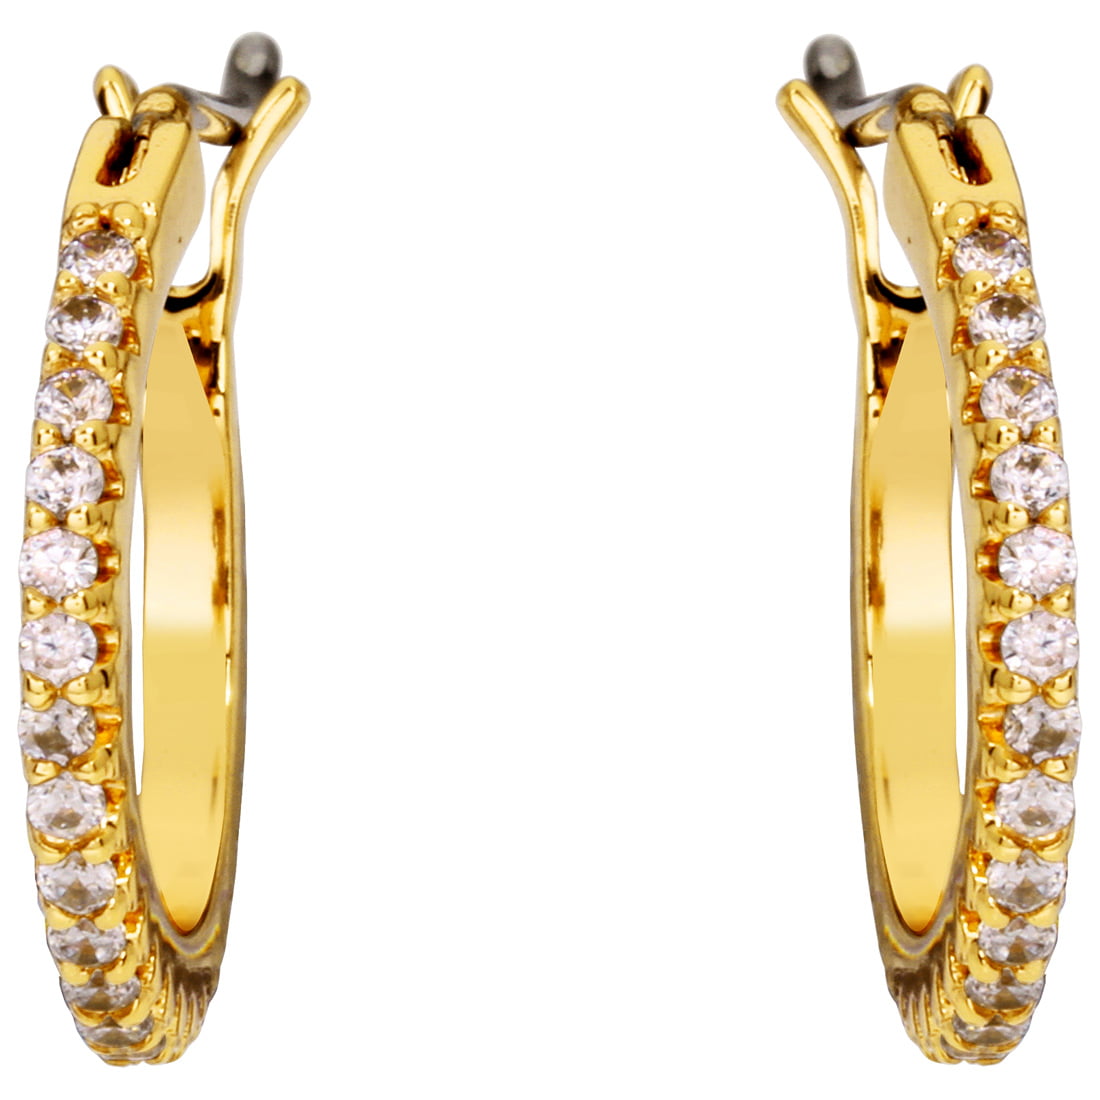 Gorjana - Gorjana Shimmer Huggies Gold Small Earrings 1811-014-02-G ...